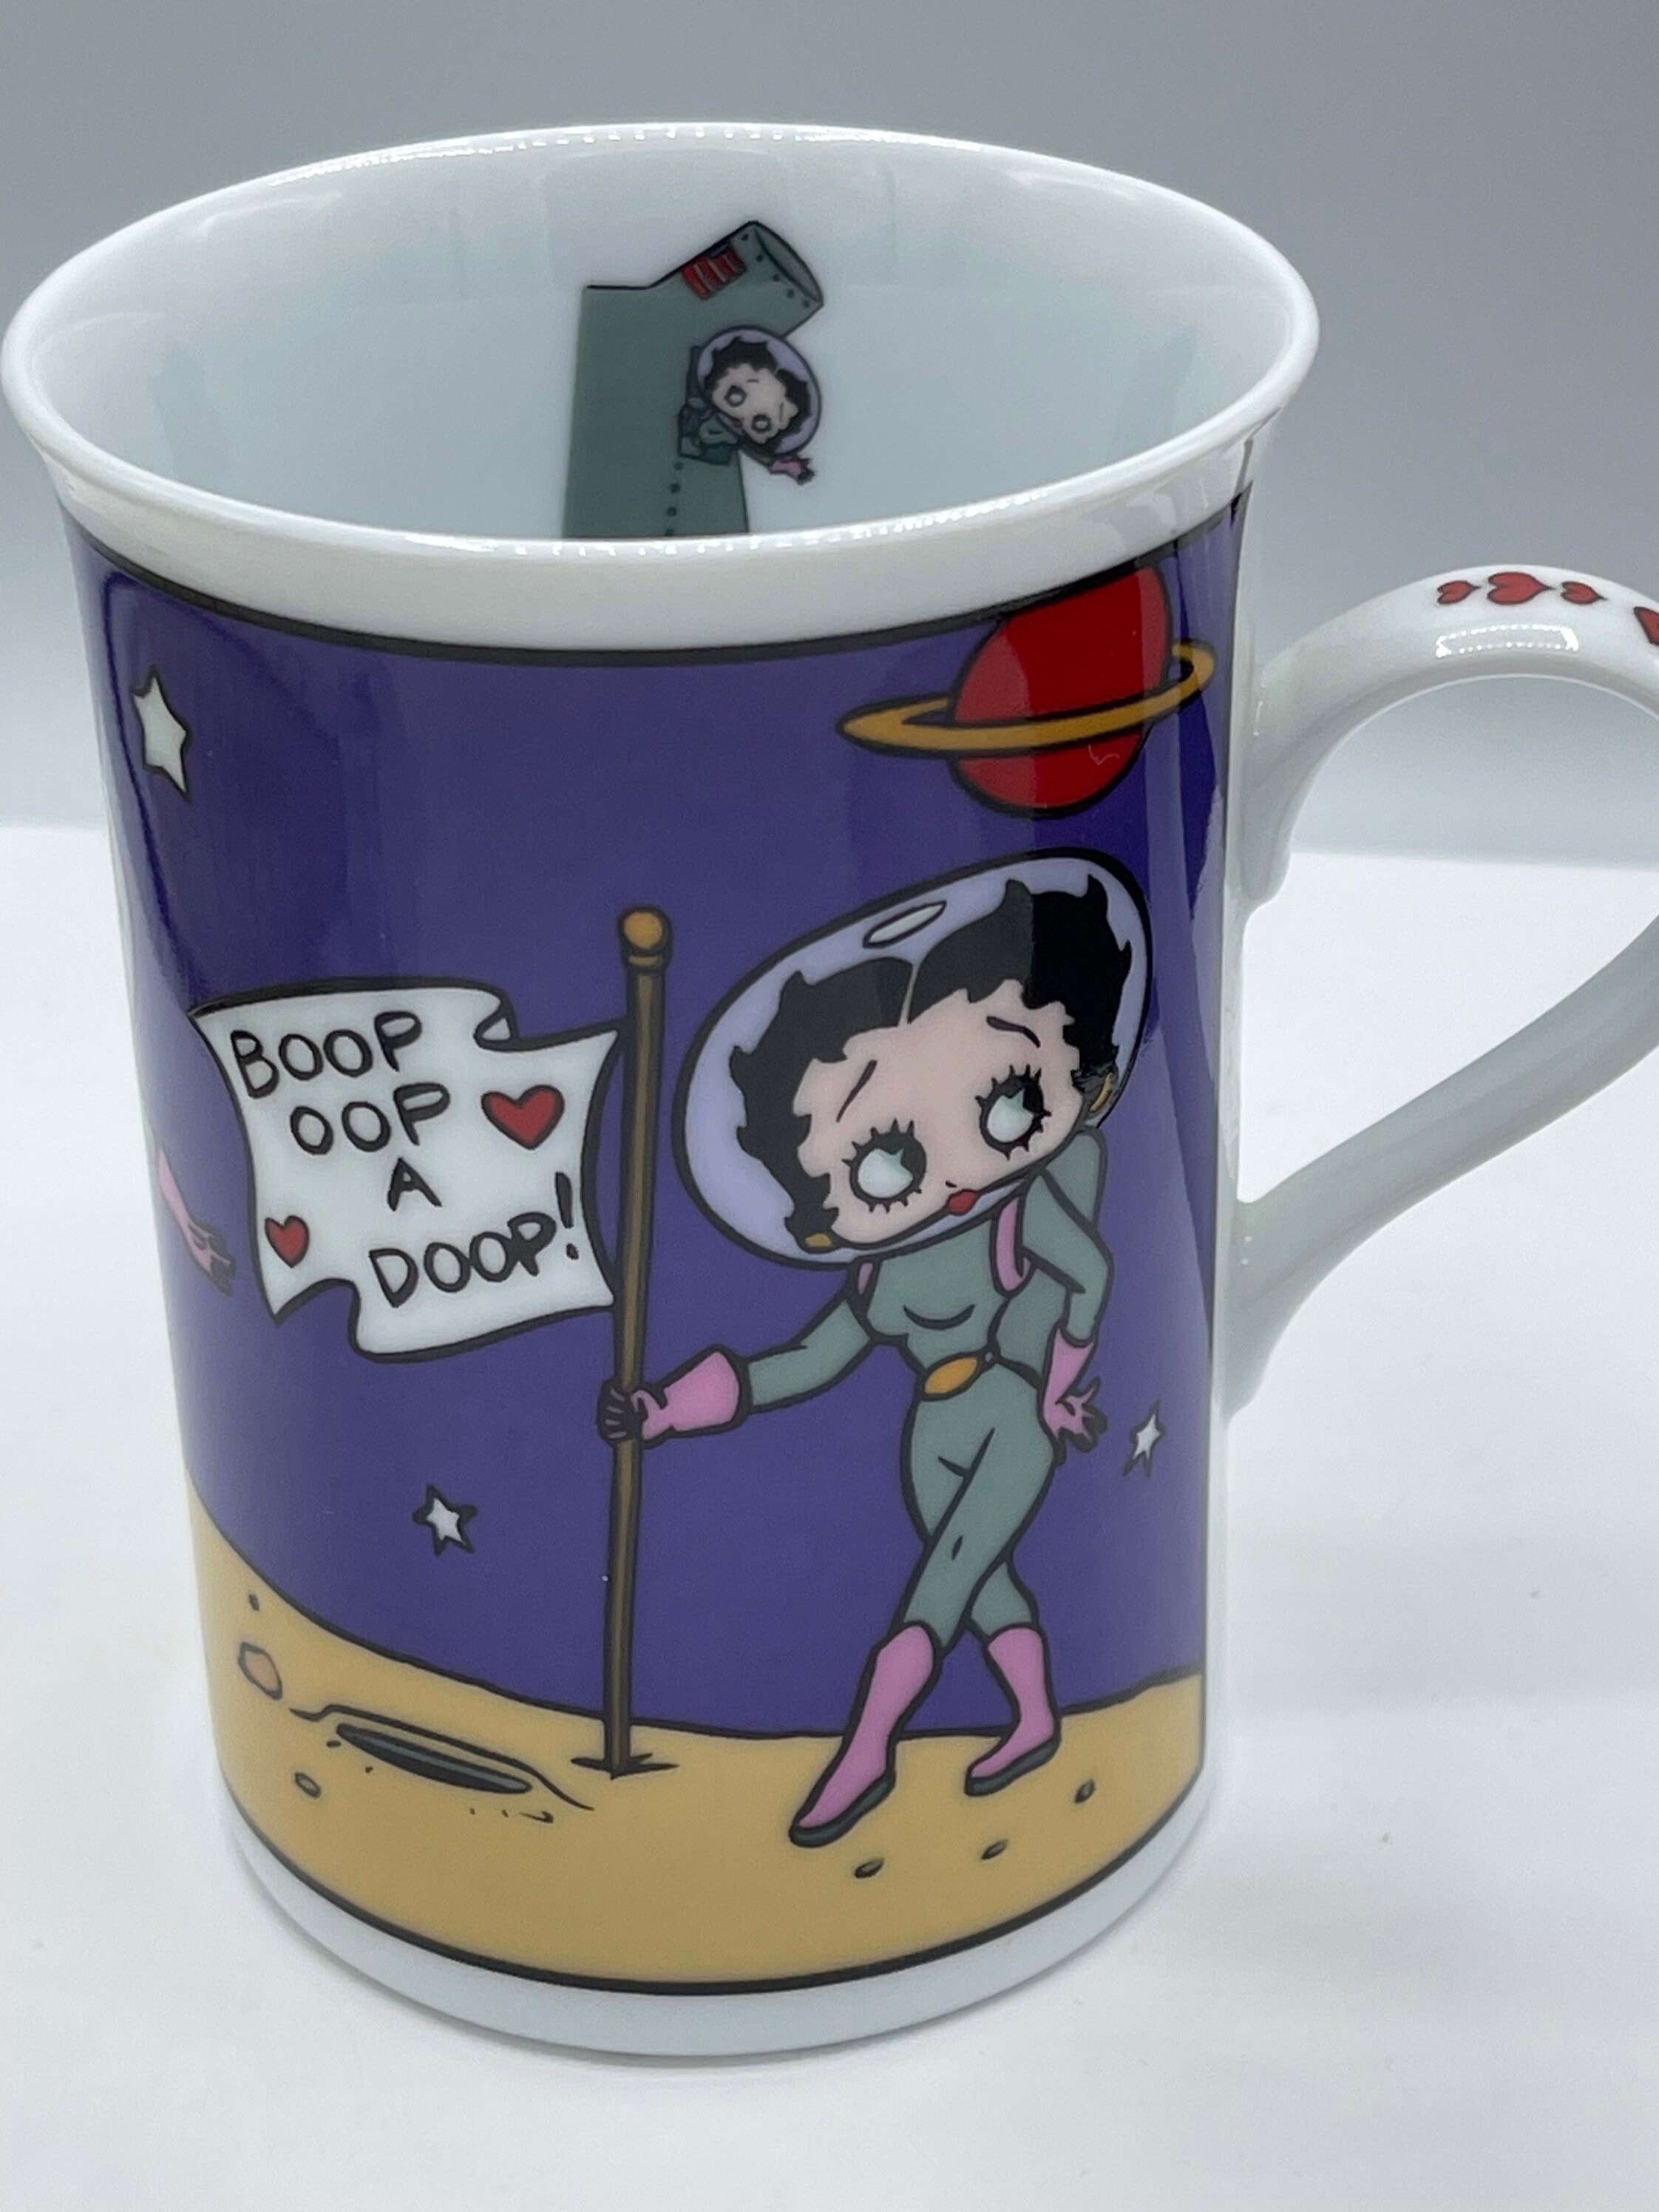 Betty Boop Mug Coffee Cup The Danbury Mint Boop-Oop-A-Doop